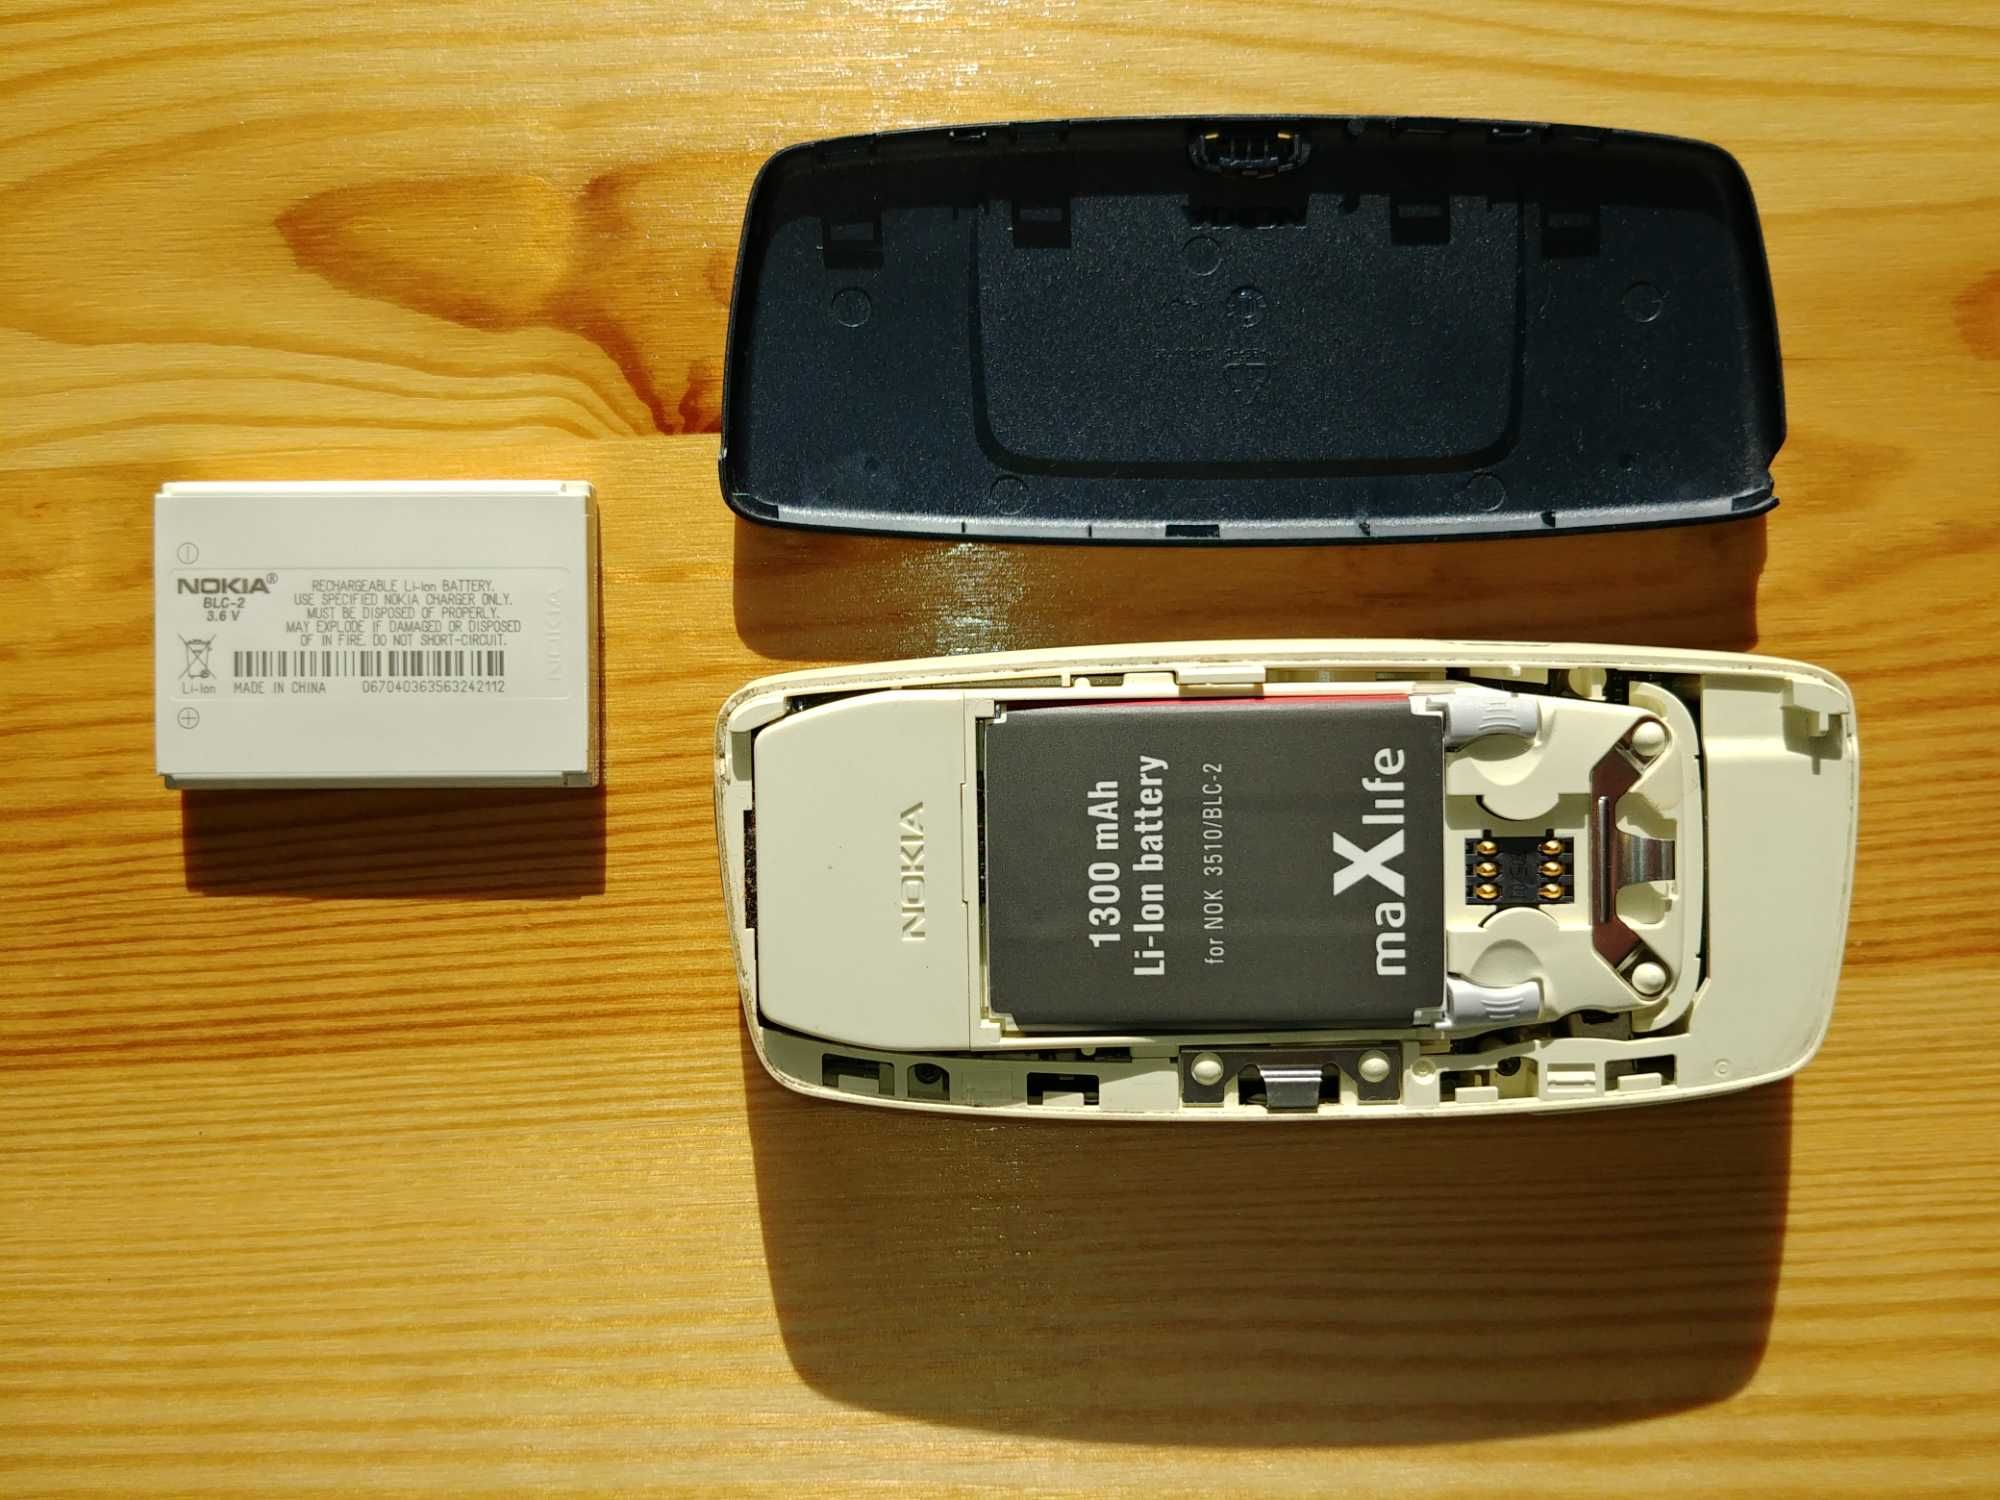 Nokia 5510 z oryginalnym pudełkiem, akcesoriami i płytą Blue Café